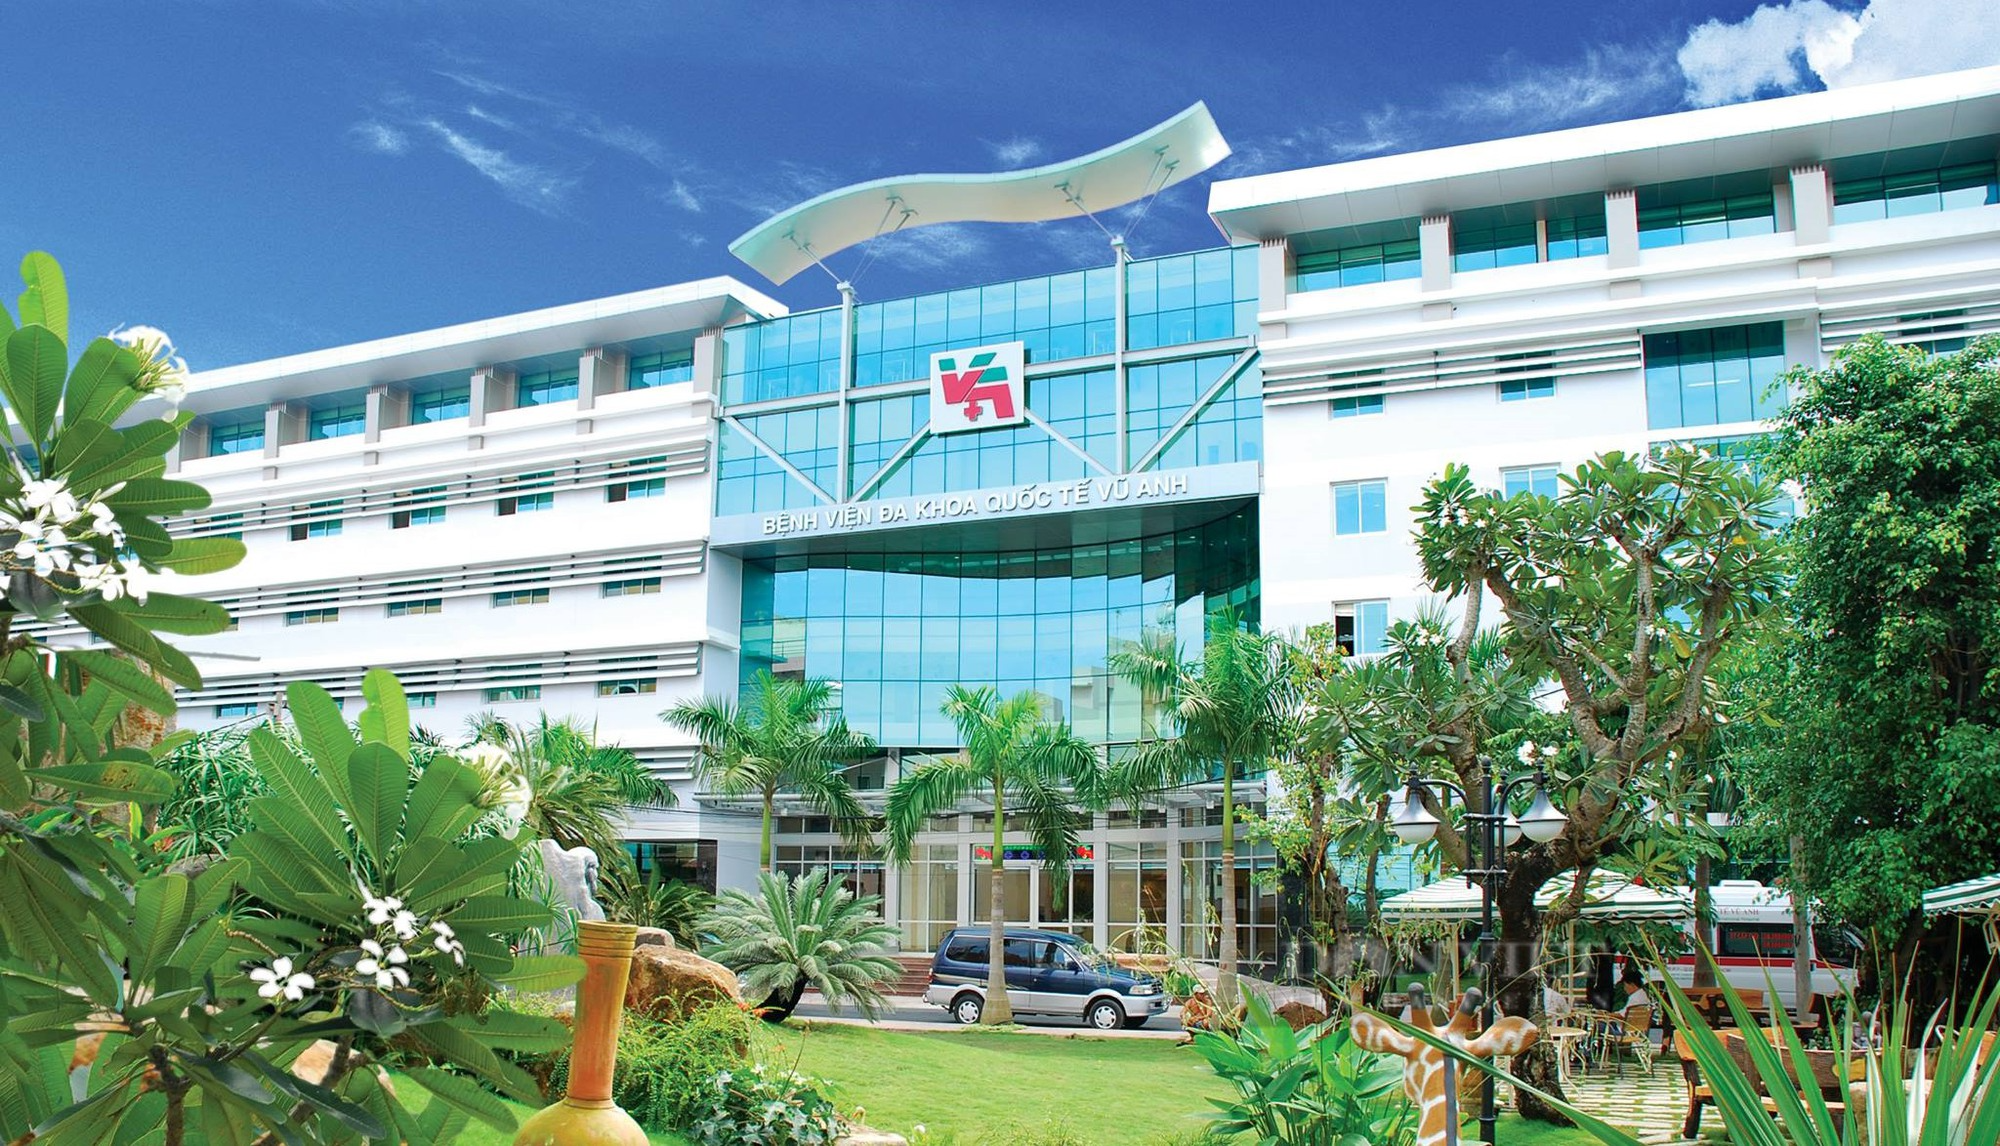 Bệnh viện của Hoa hậu Quý bà Trương Thị Tuyết Nga, trước nguy cơ bị xóa sổ - Ảnh 1.